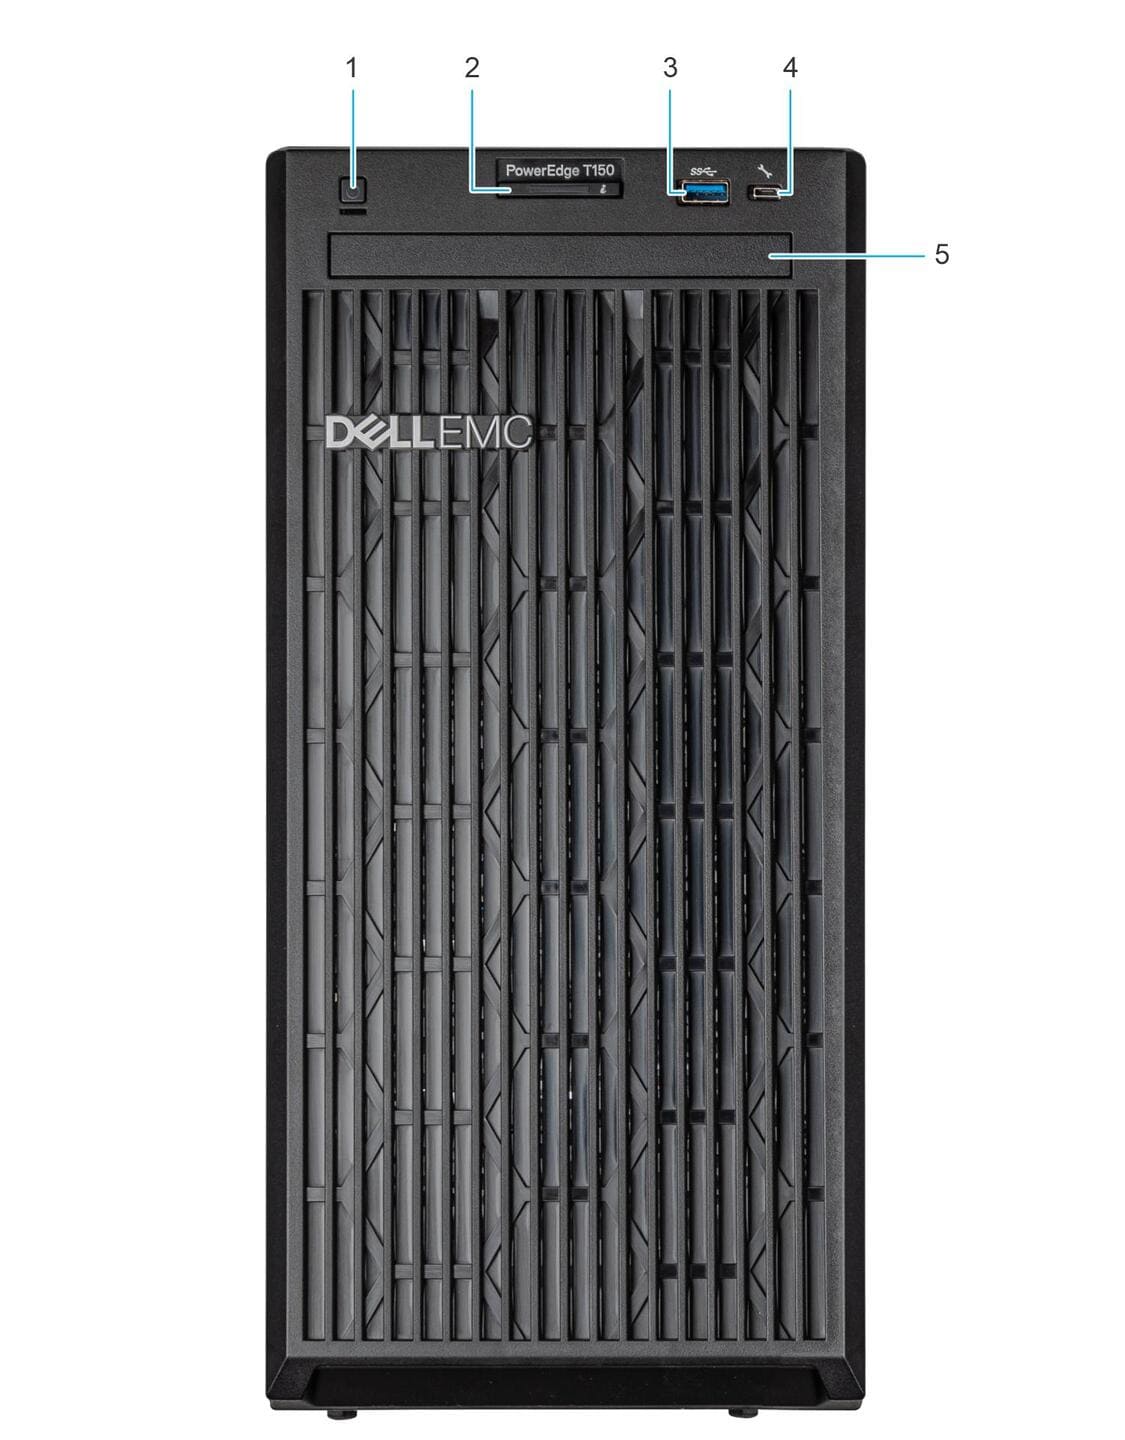 [Review] Server Dell PowerEdge T150 - Máy chủ dạng tháp (Tower) toàn diện